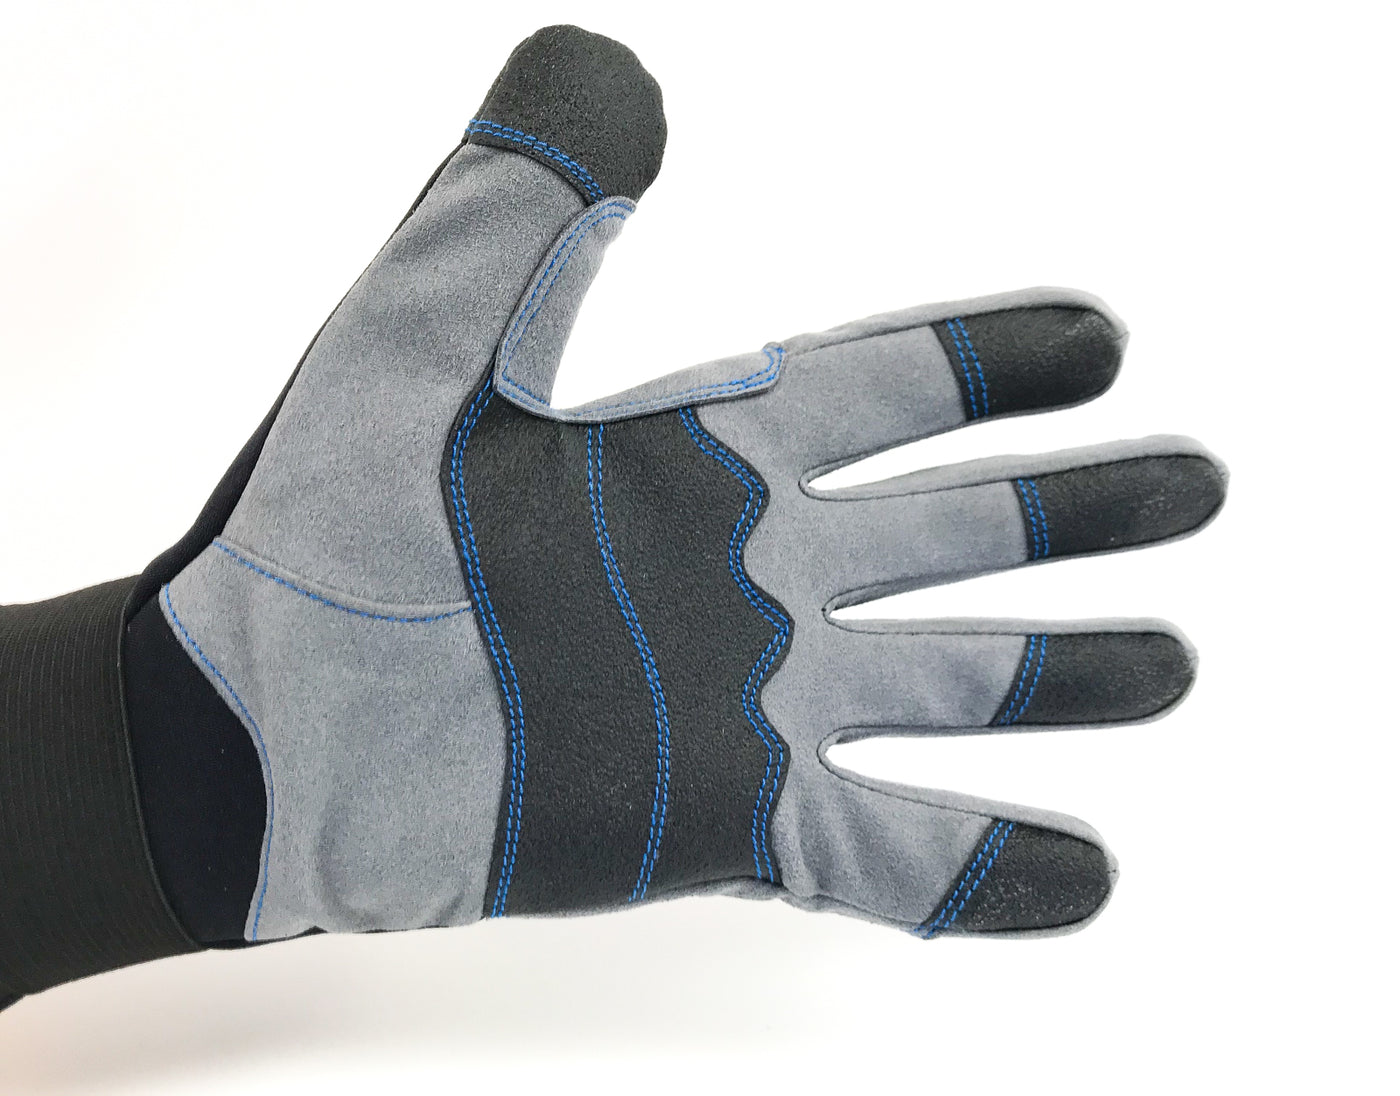 BTS DuraXFlex 1.5mm Glove (XS, S, M, L, XL, 2XL) – Blue Tuna Spearfishing Co